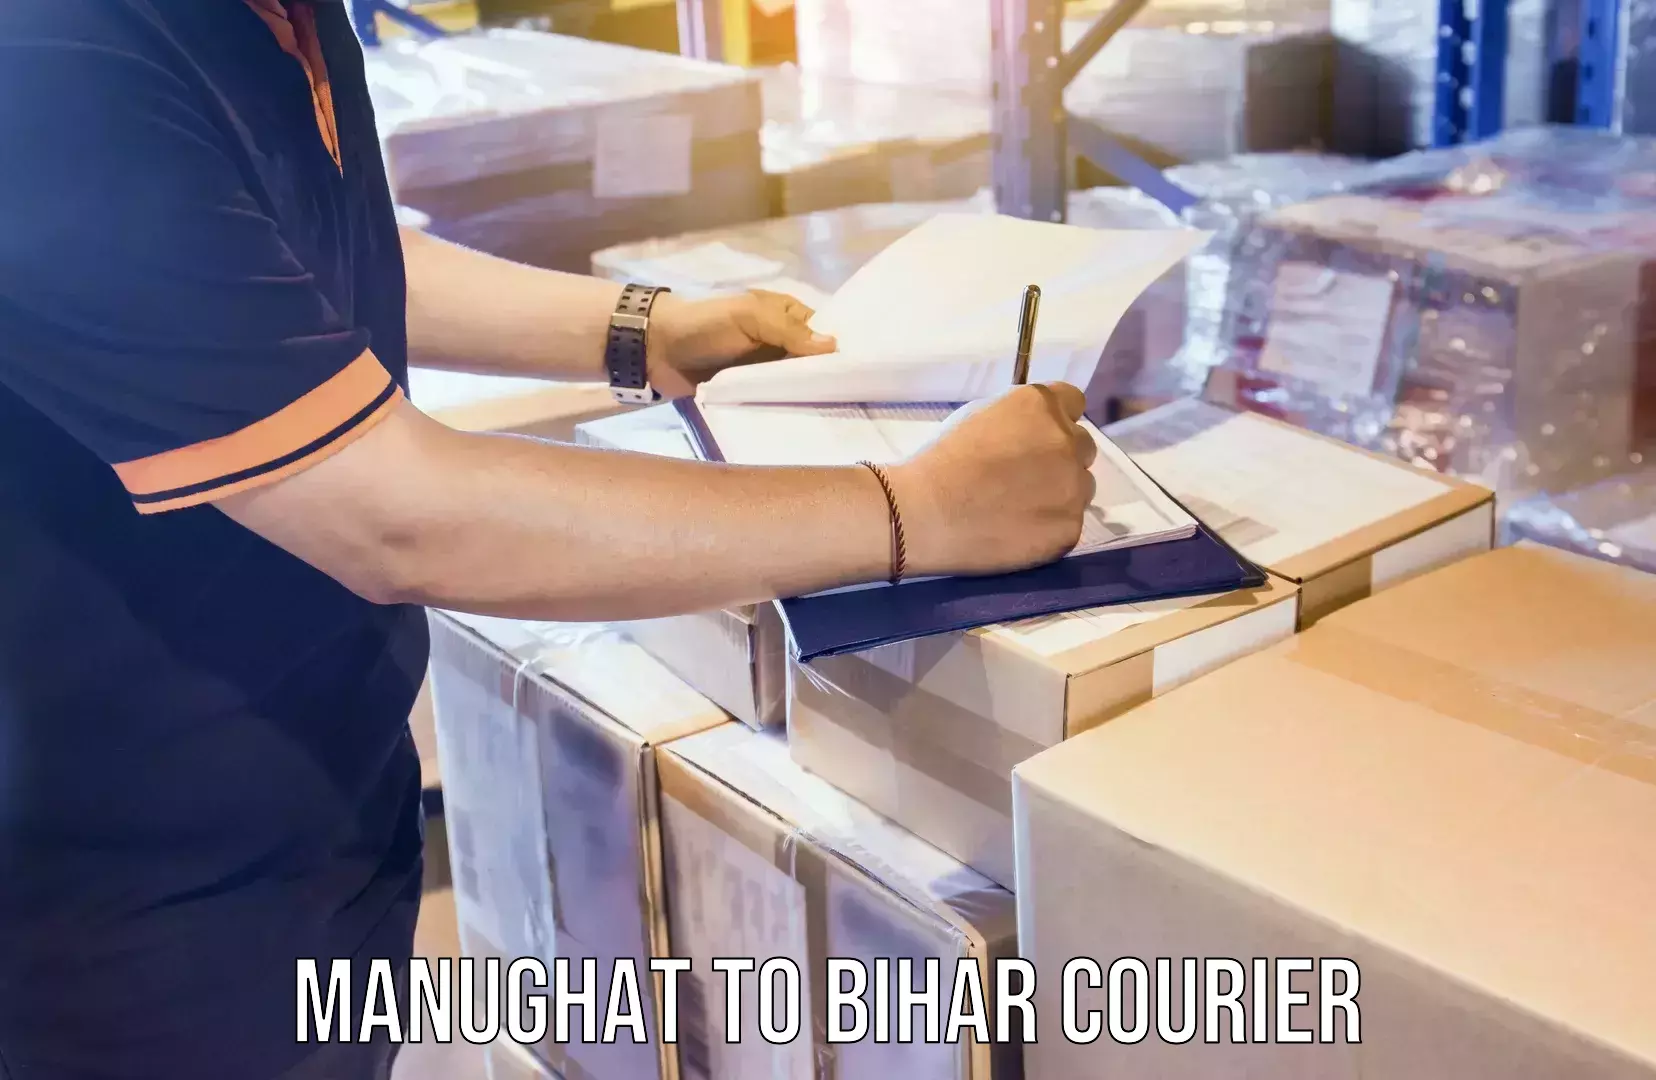 Express logistics service Manughat to Bihar